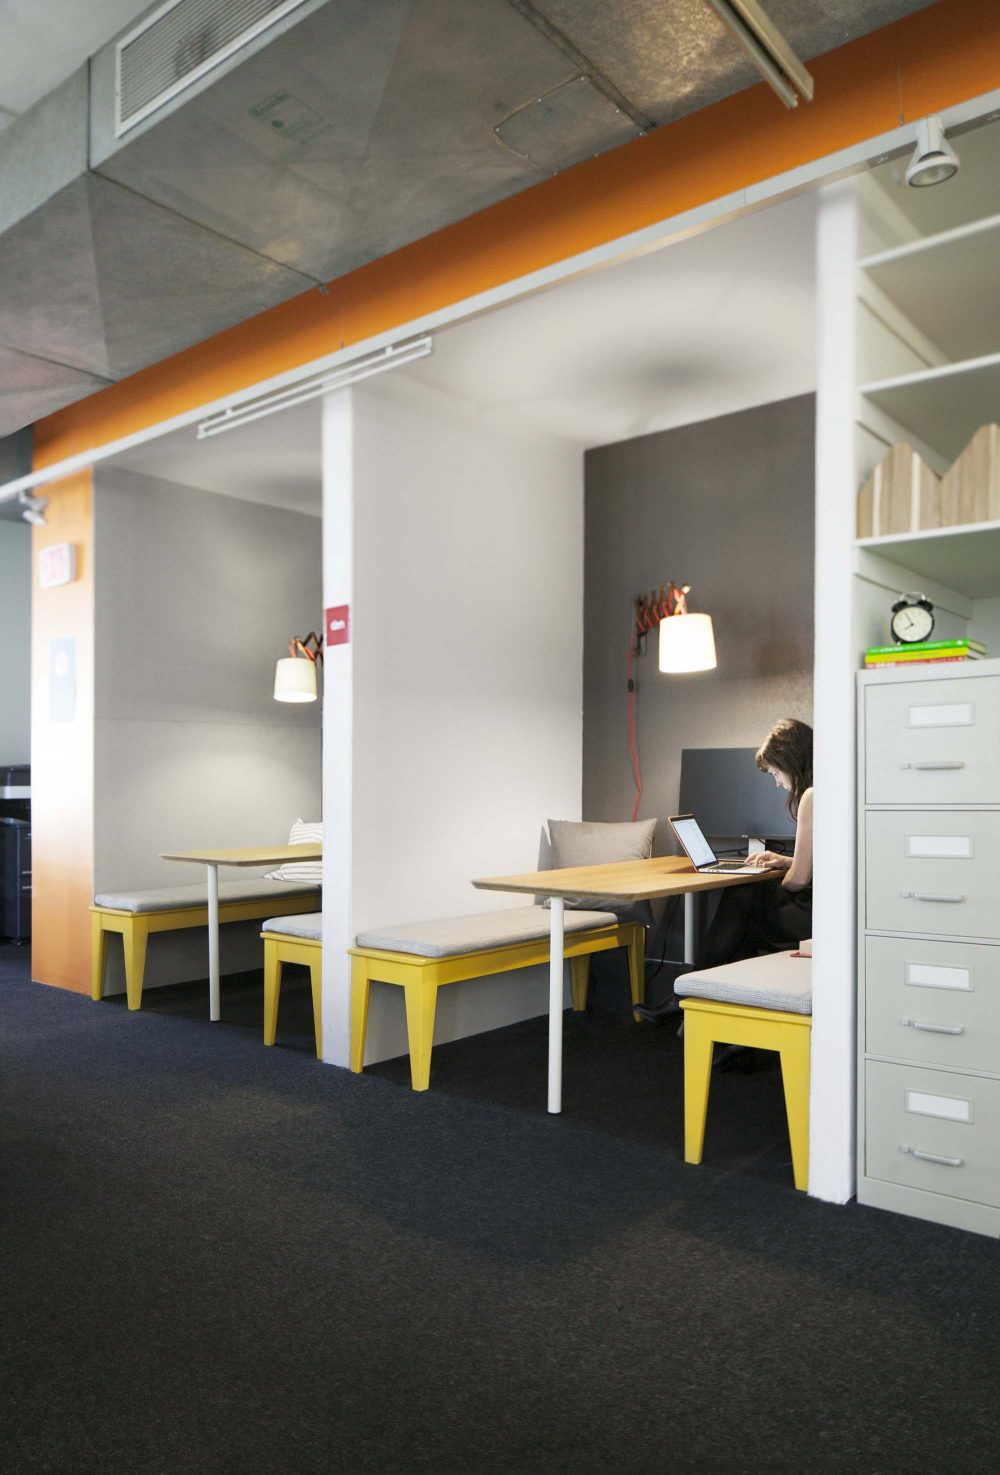 像隔间一样的隐蔽空间被称作书房，这个私密的个人工作空间适合那些需要专注于某项工作的人群。